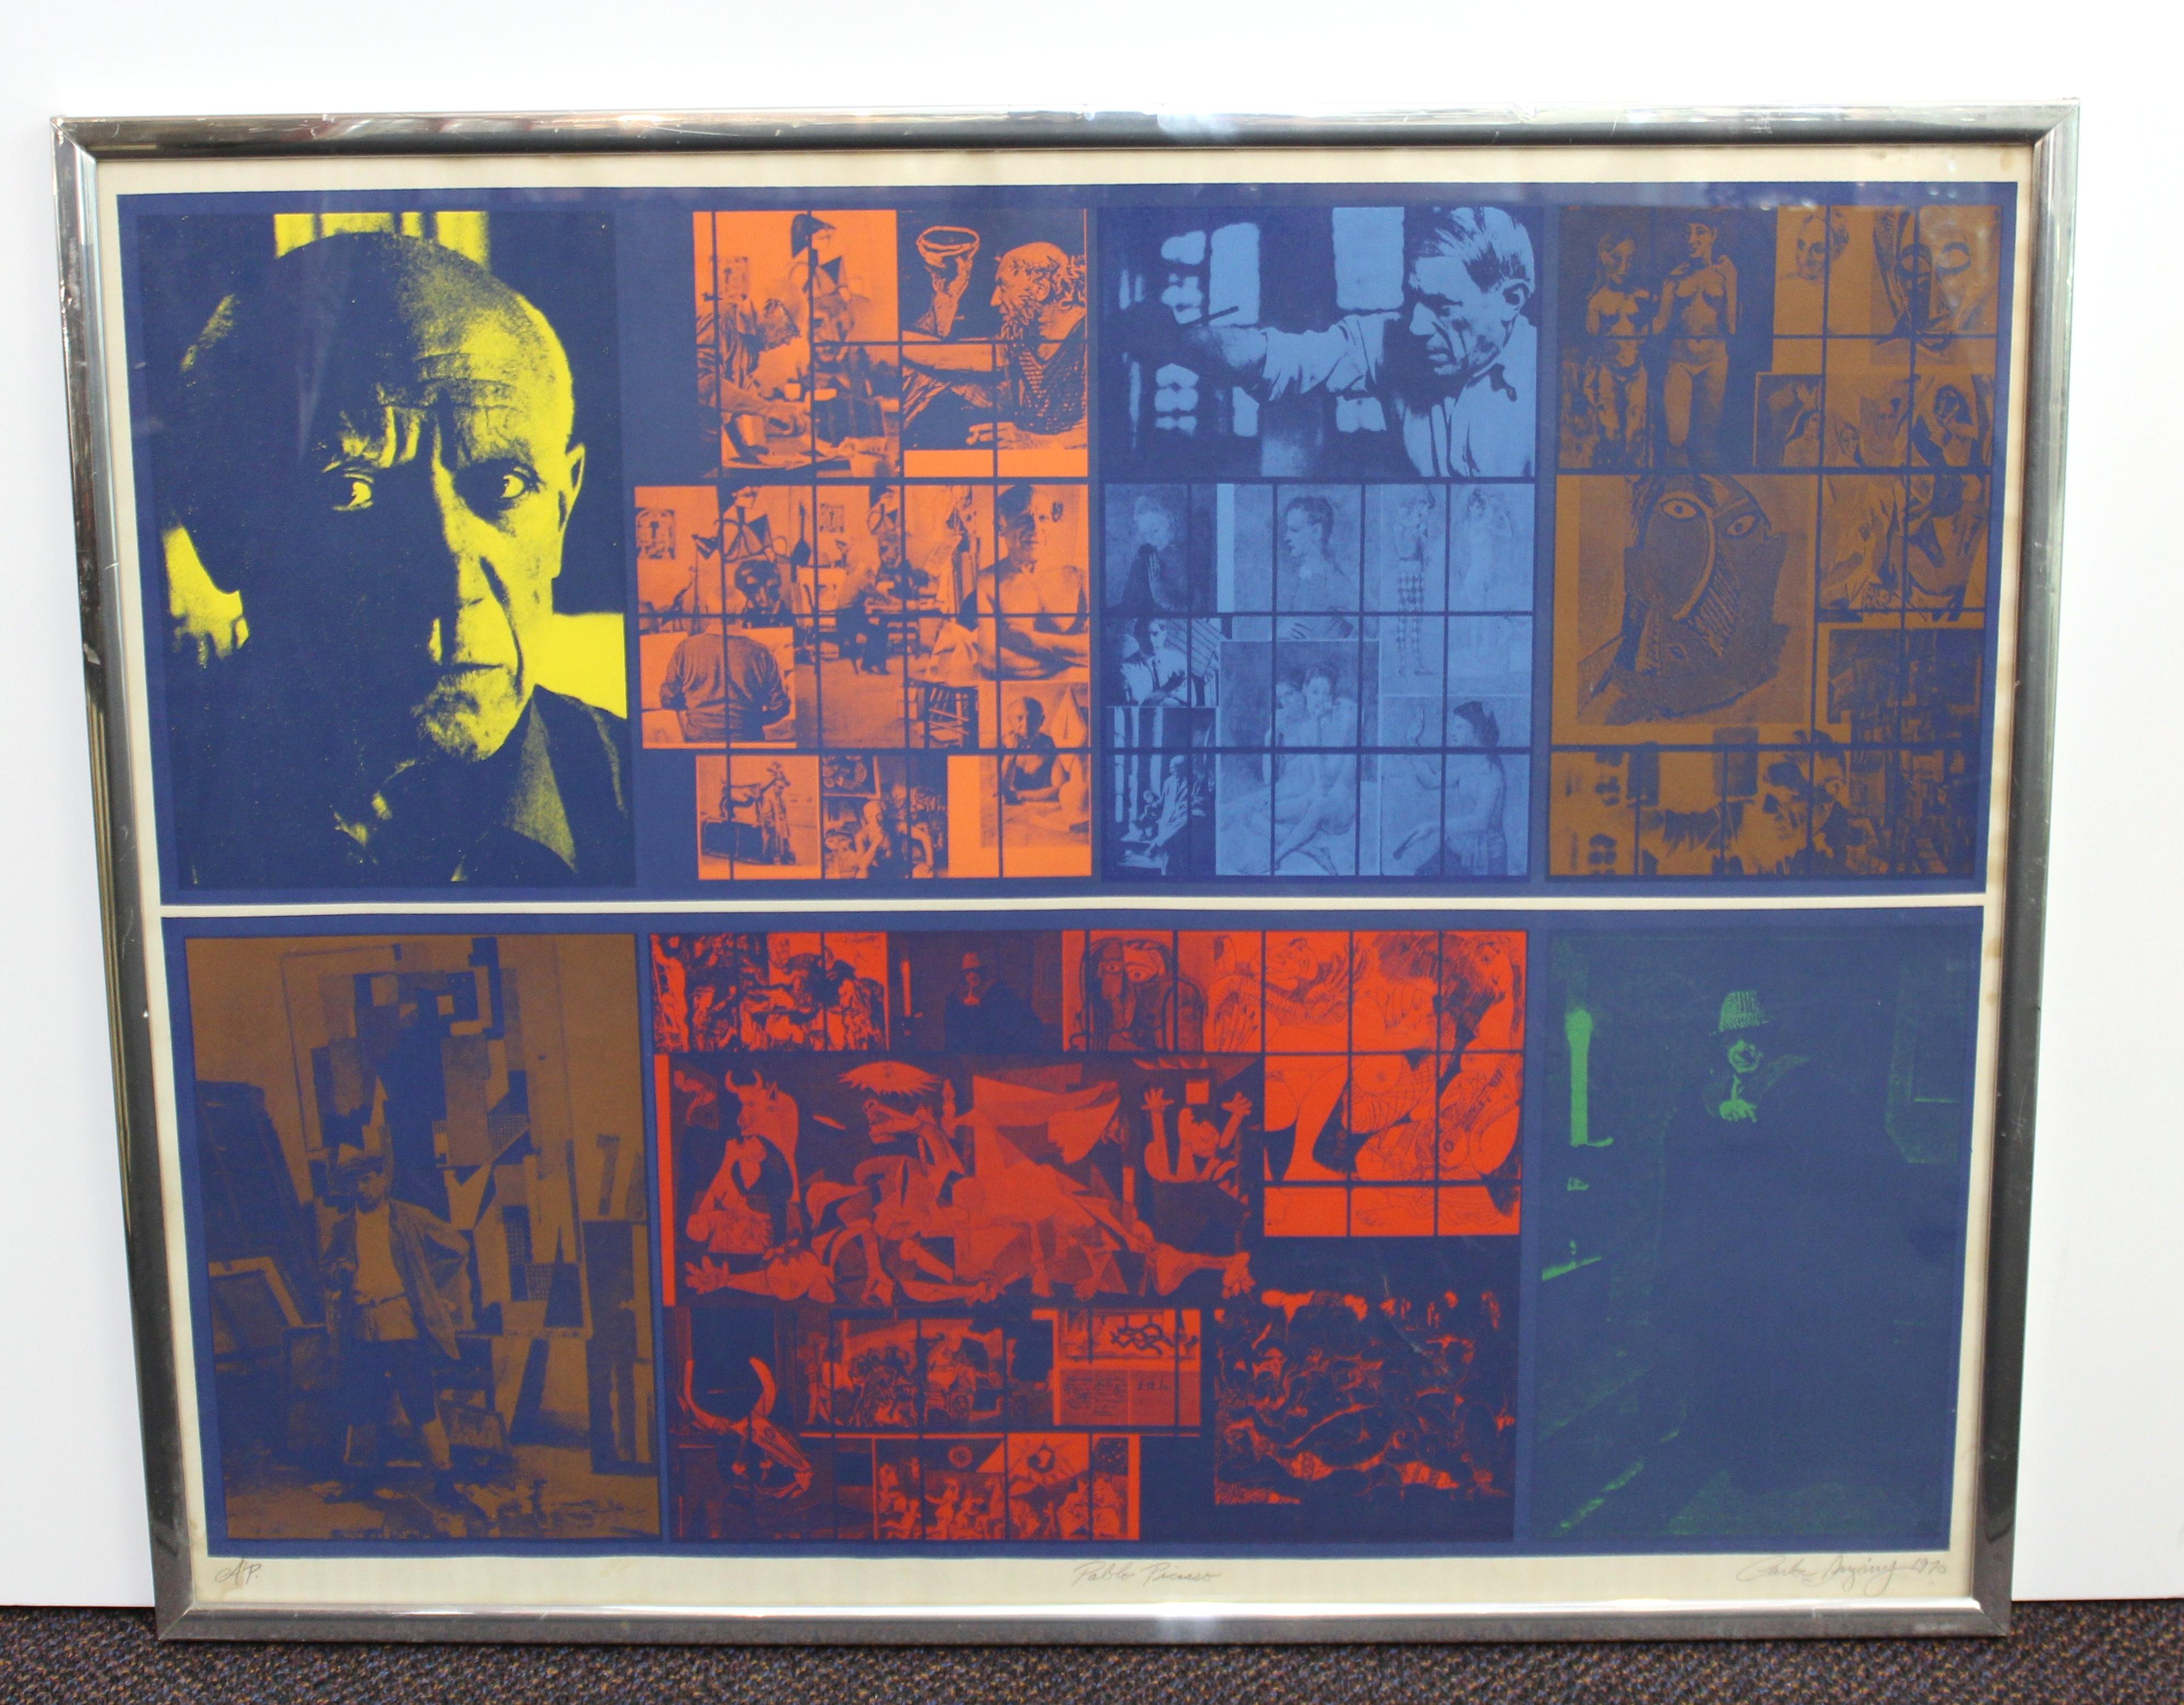 Sérigraphie d'épreuve d'artiste Pop Art créée par Carlos Irizarry en 1970 et montrant un collage coloré de photographies de Pablo Picasso dans son atelier et certaines de ses œuvres. L'œuvre est marquée au crayon 